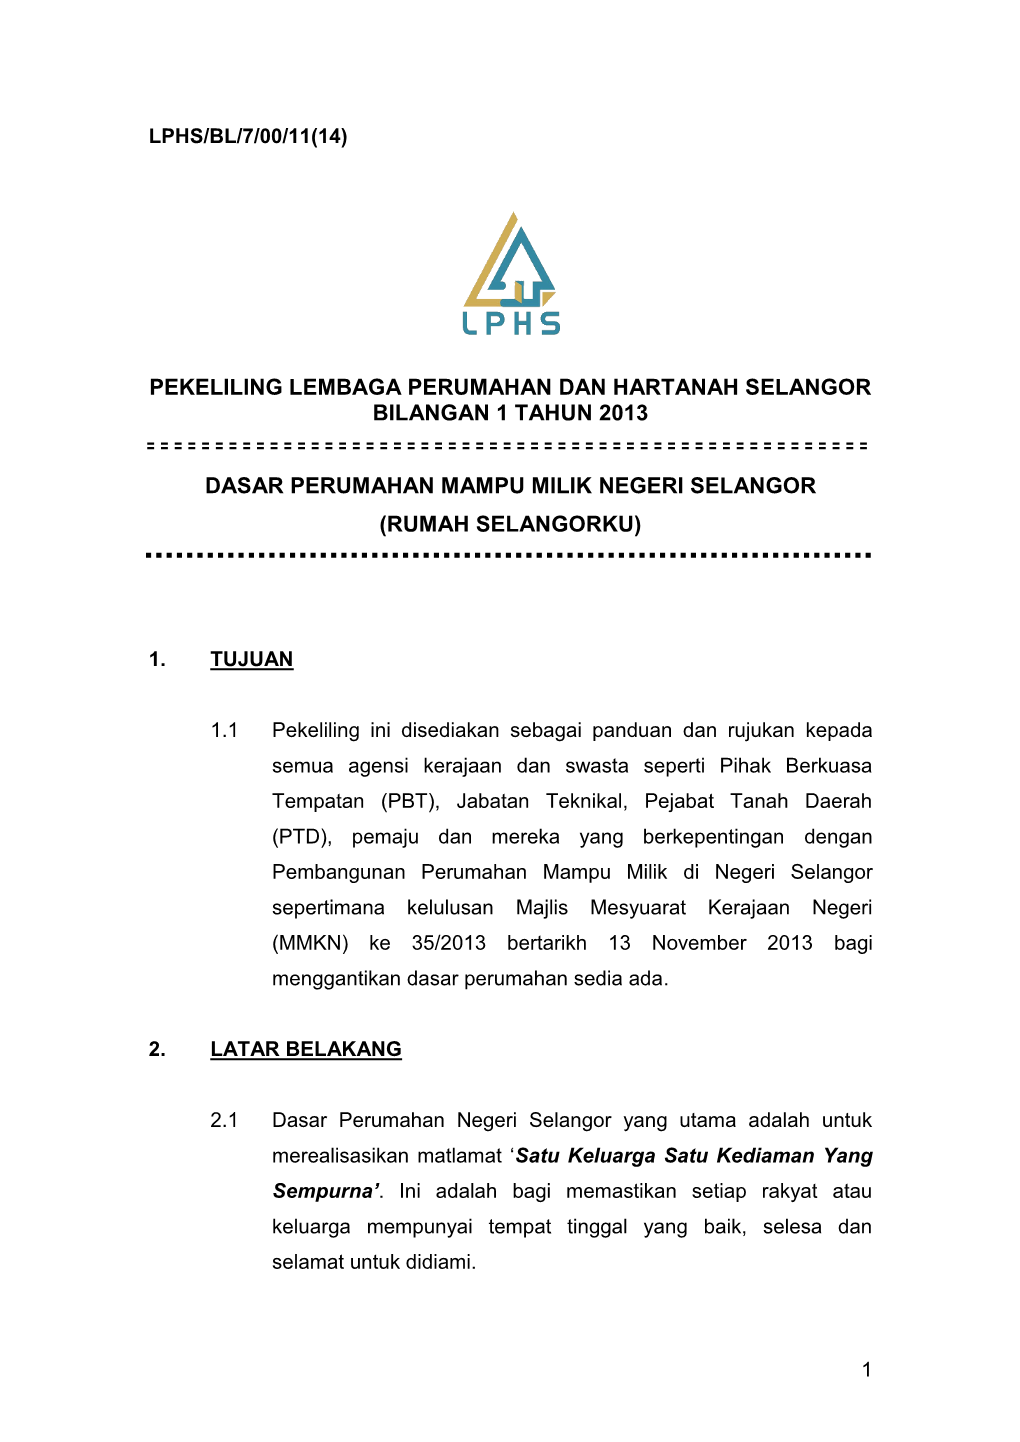 LPHS Circular Bil 1/2013 – Rumah Selangorku